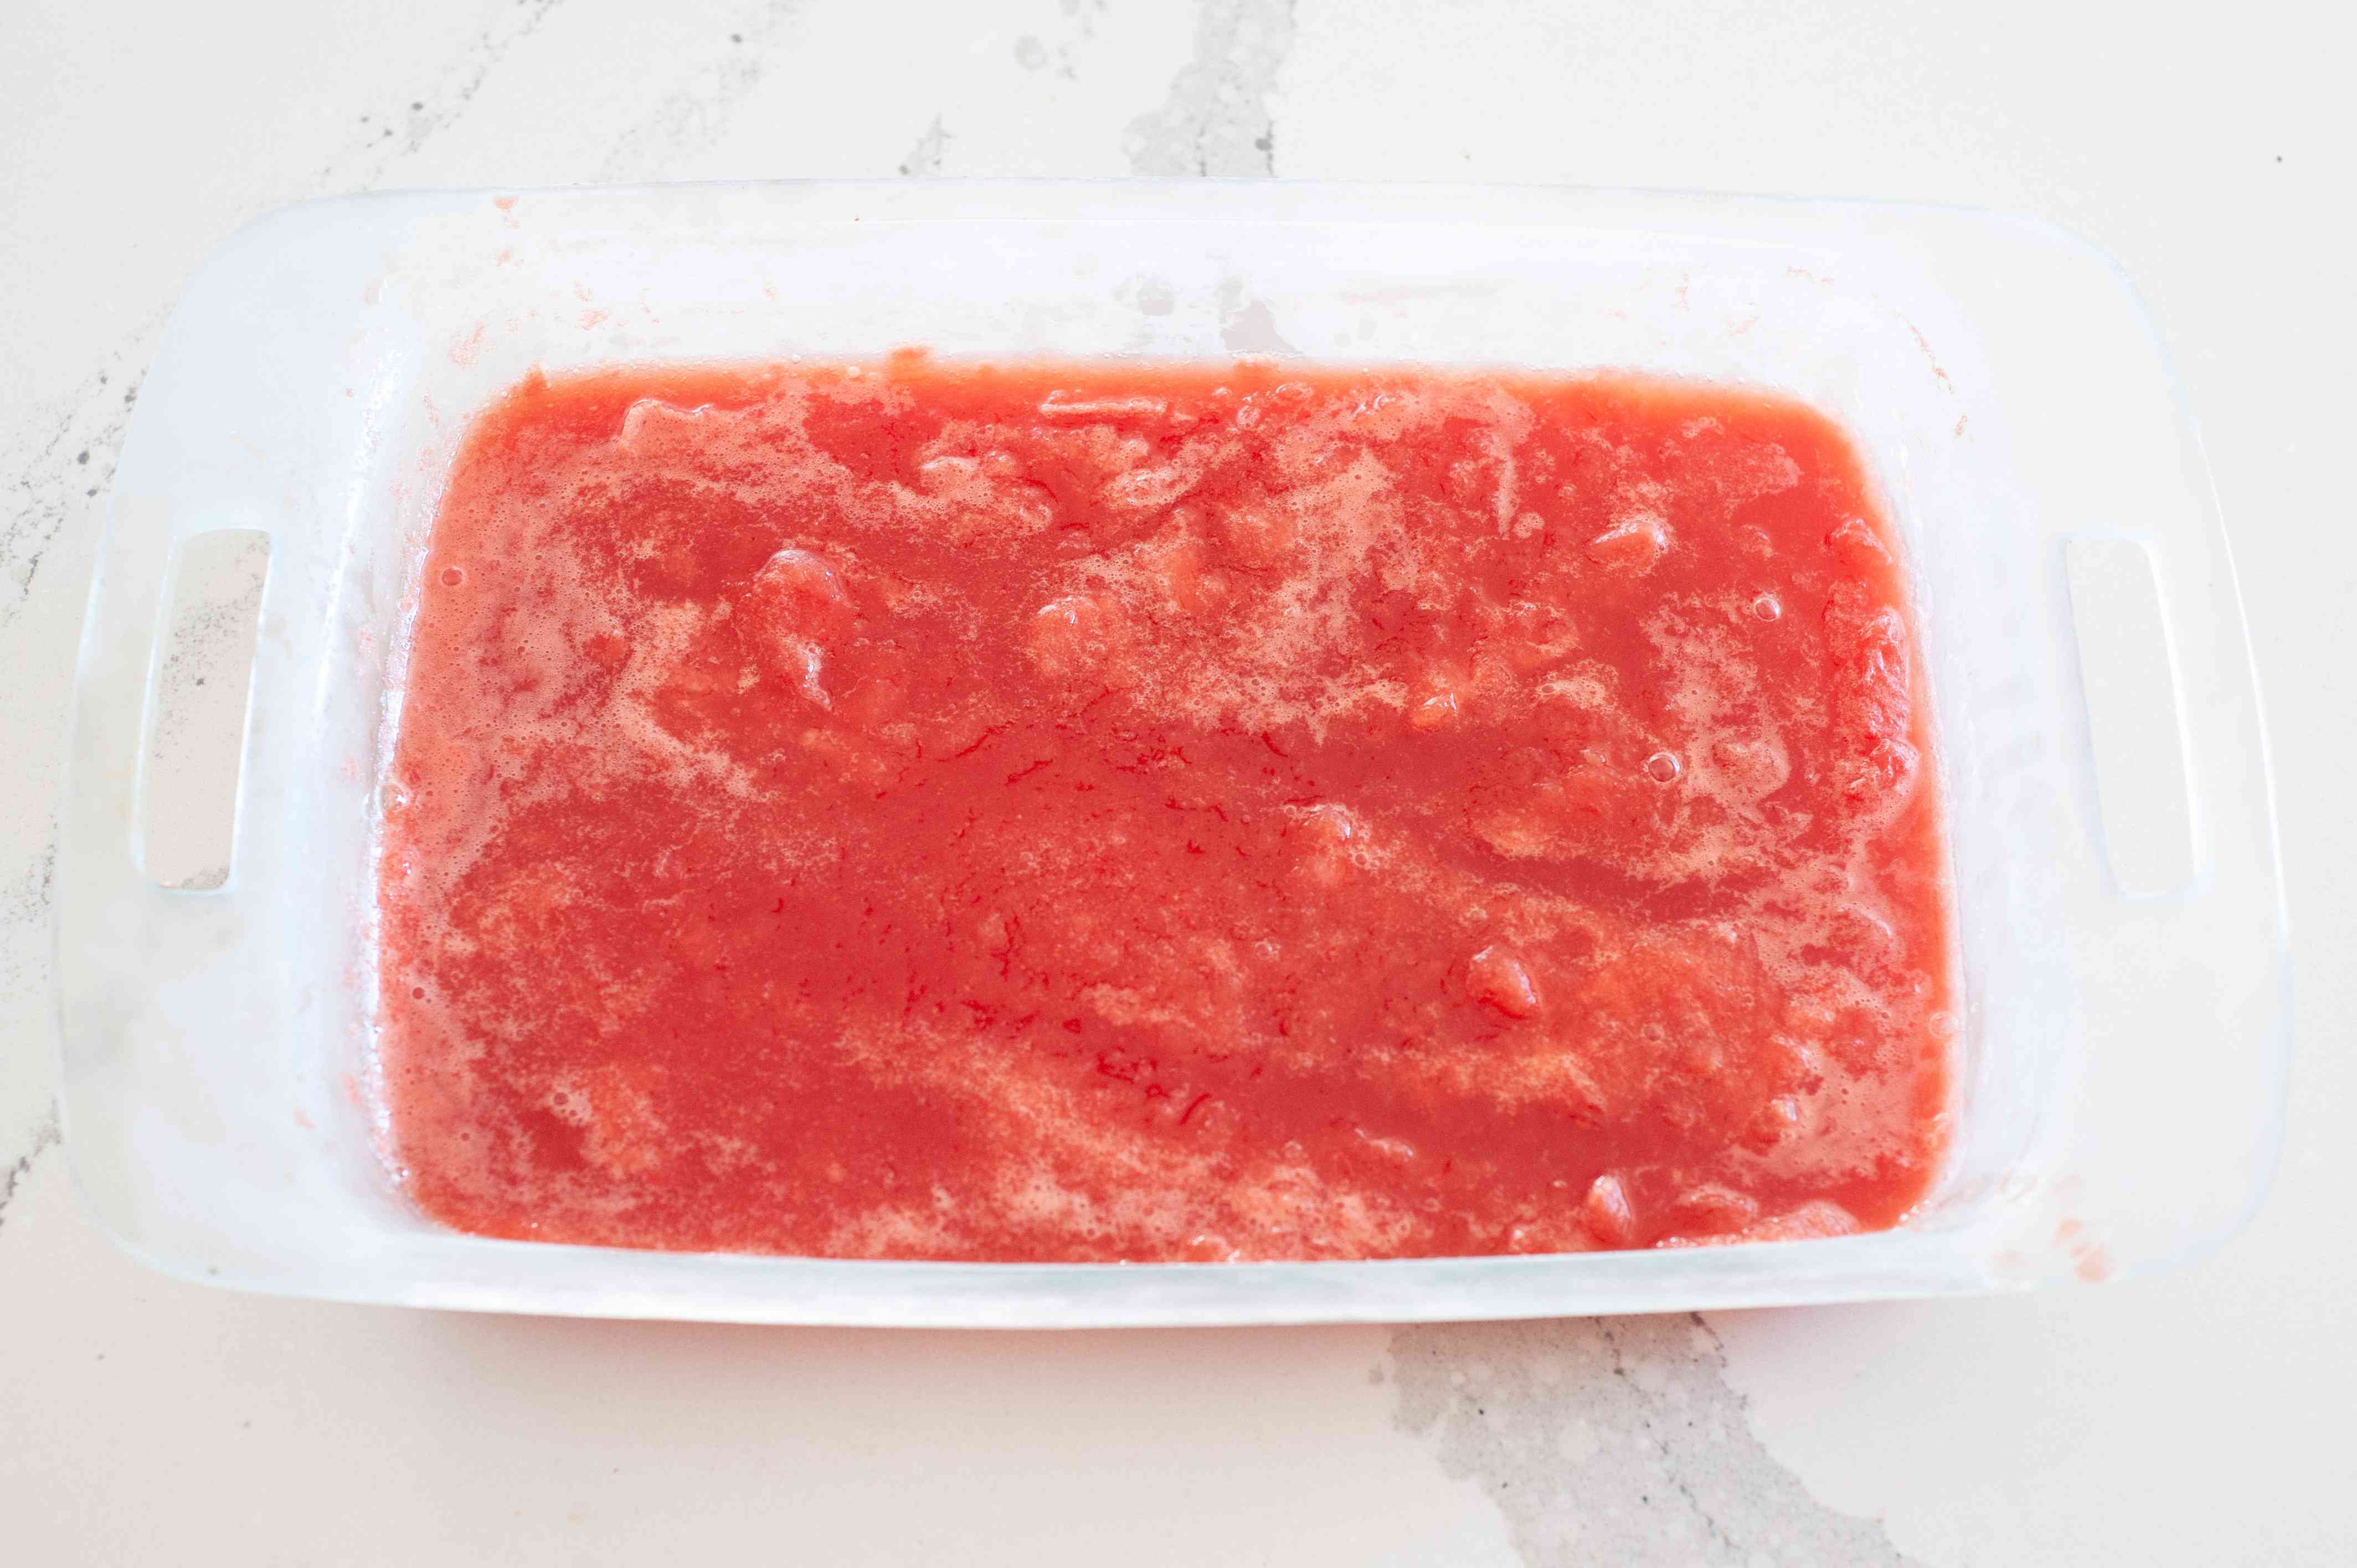 Watermelon liquid in a baking dish to make a watermelon granita recipe.